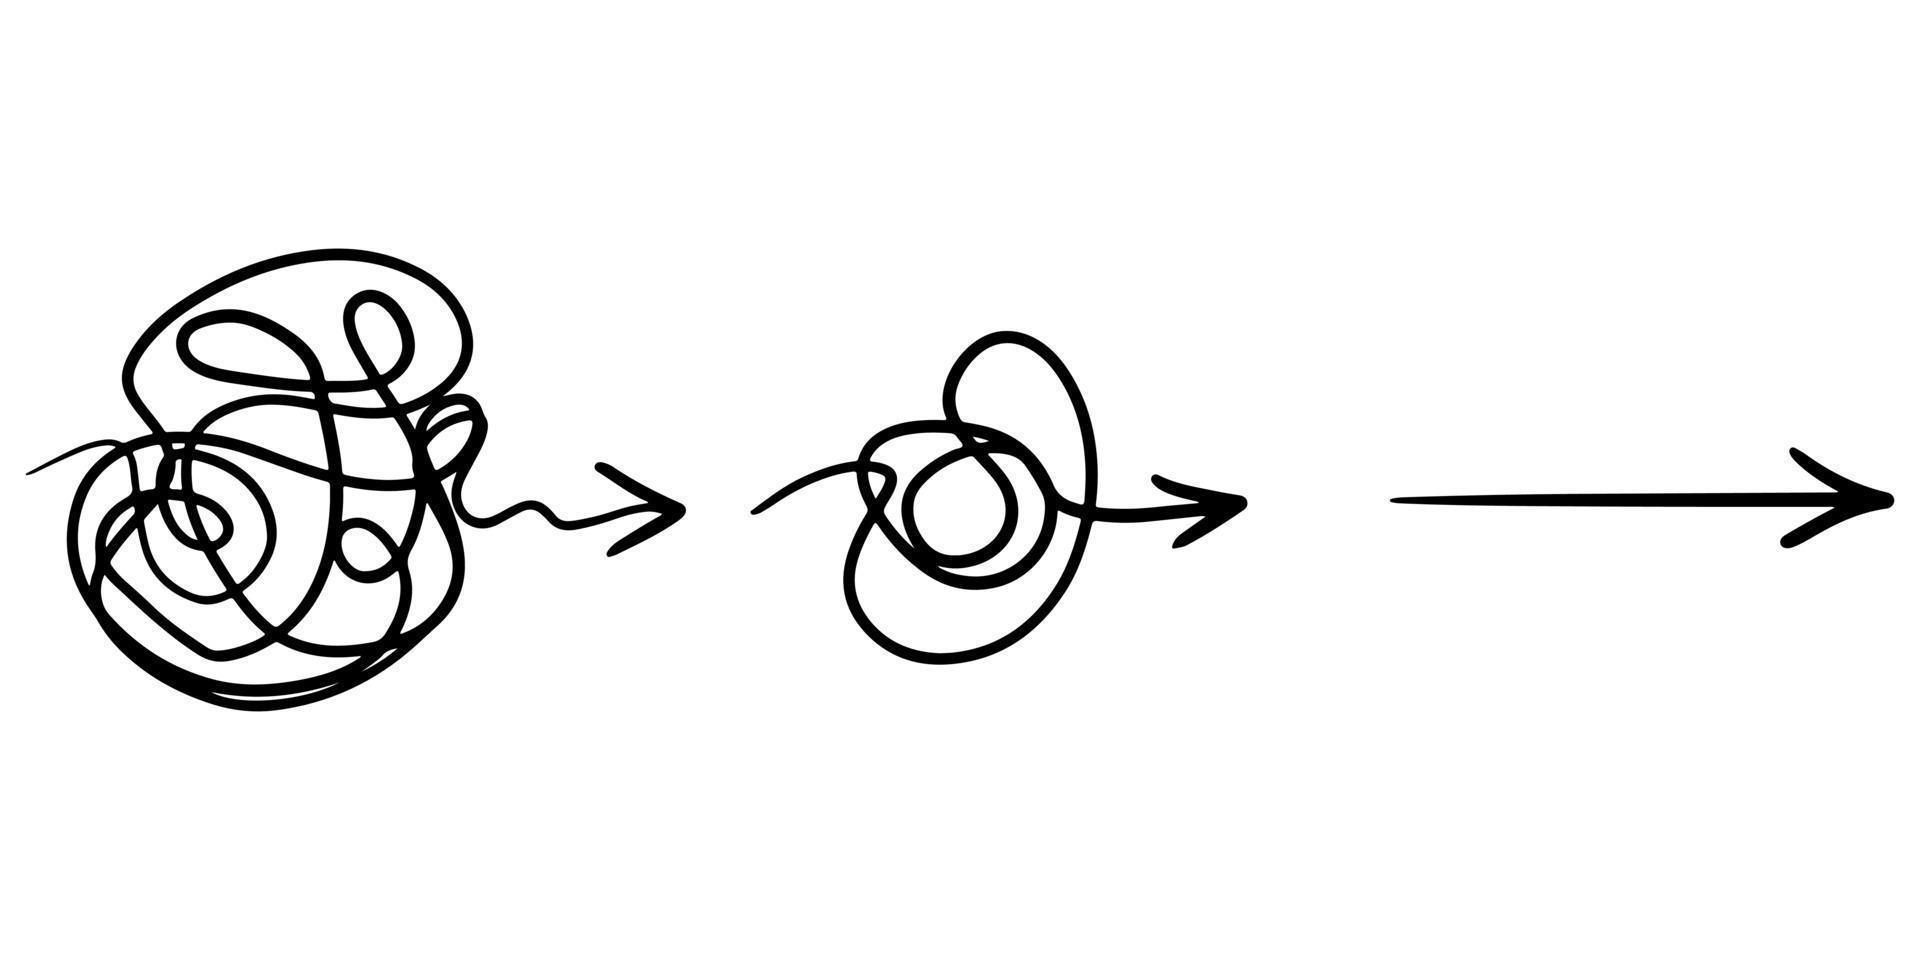 clarté de confusion ou concept d'idée de vecteur de chemin. simplifier le complexe. illustration vectorielle de griffonnage.